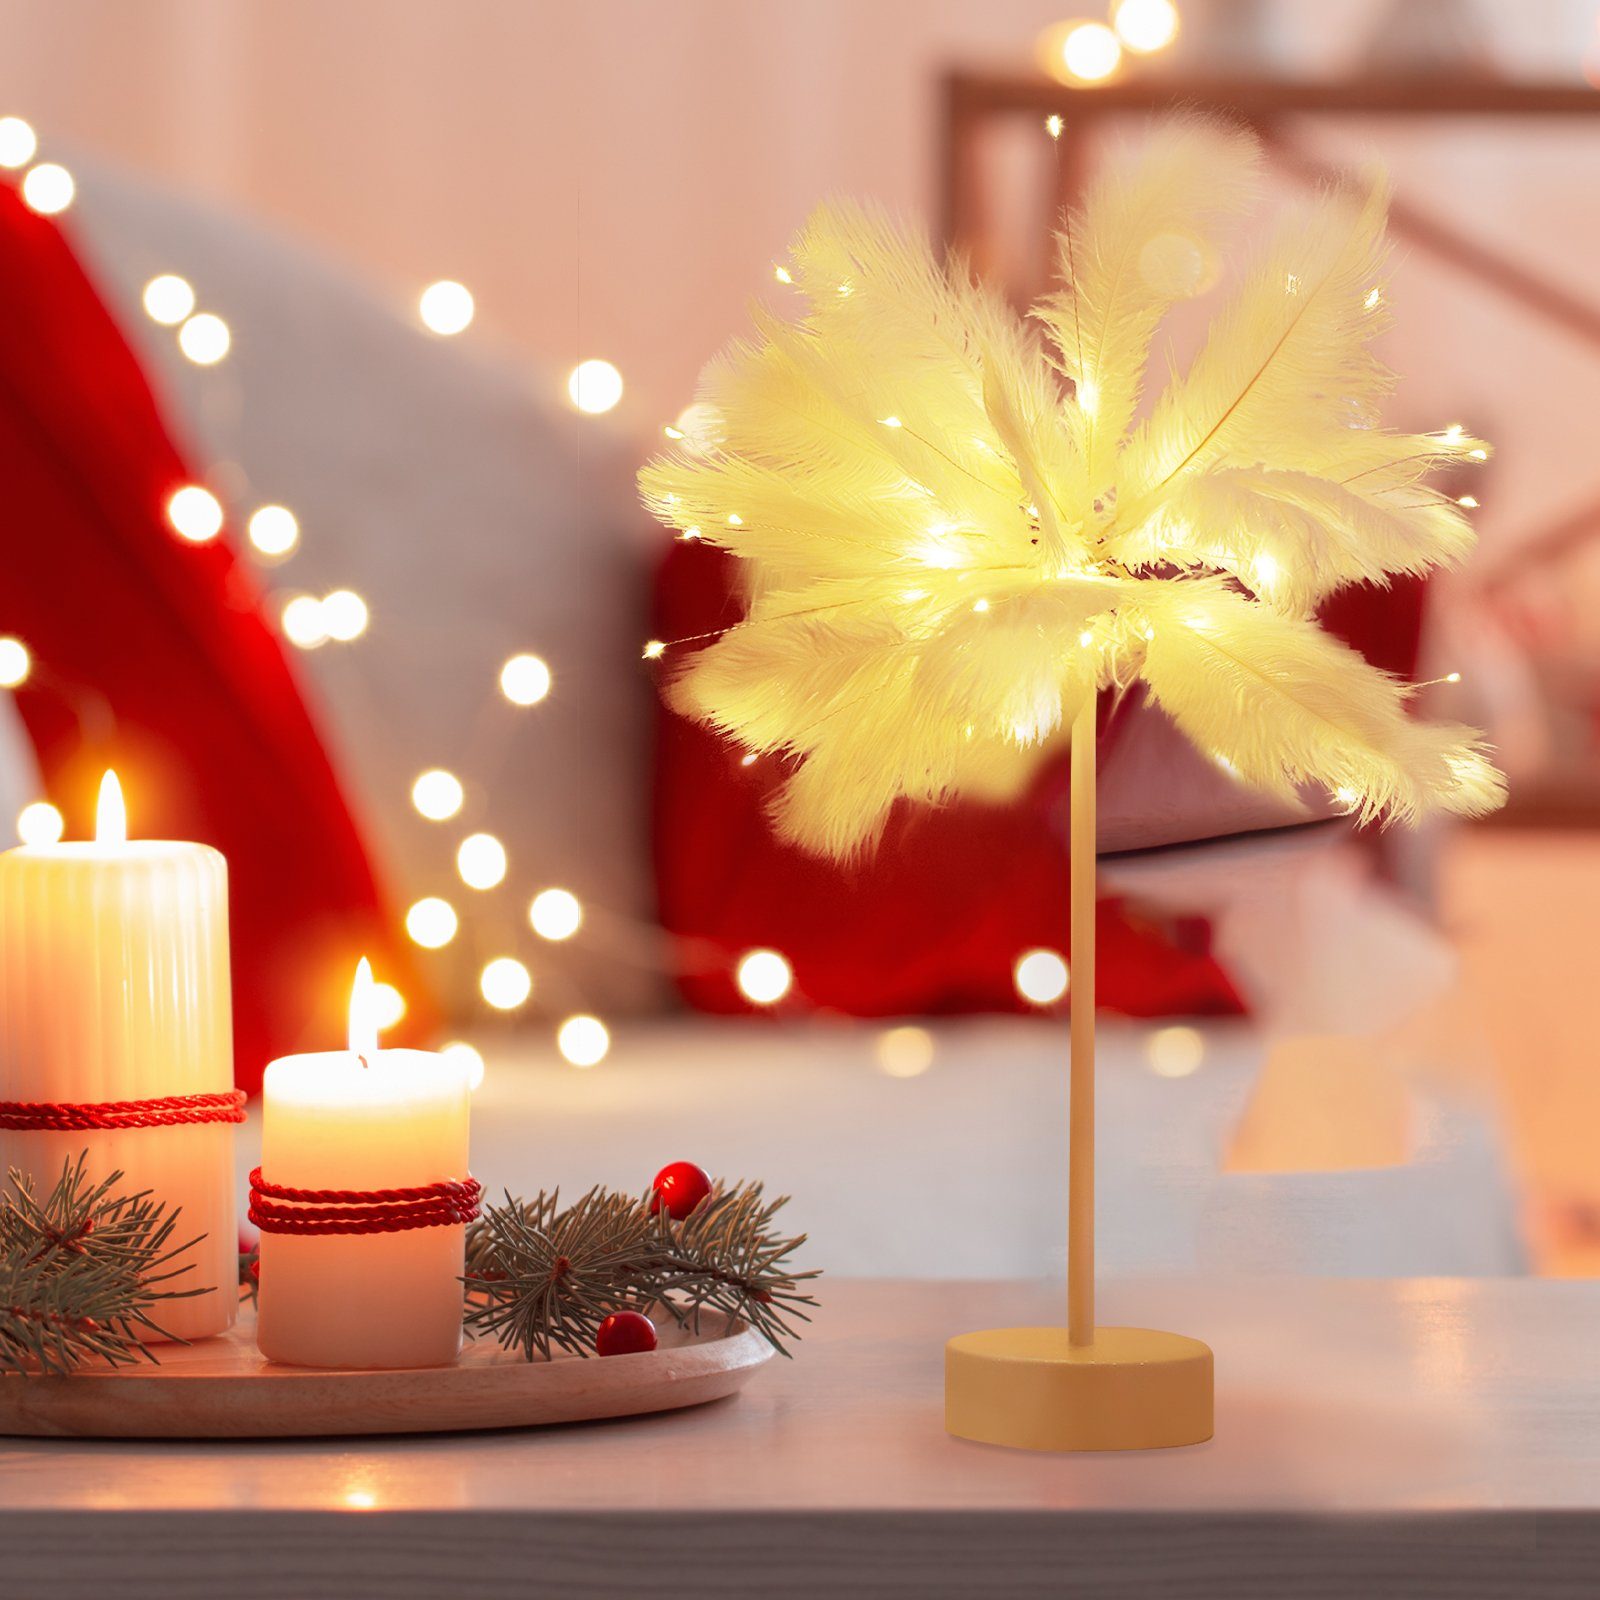 LED Salcar Tischlampe Feather LED-Lichterkette Warmweiß Weihnachtsdeko Weihnachtsbeleuchtung